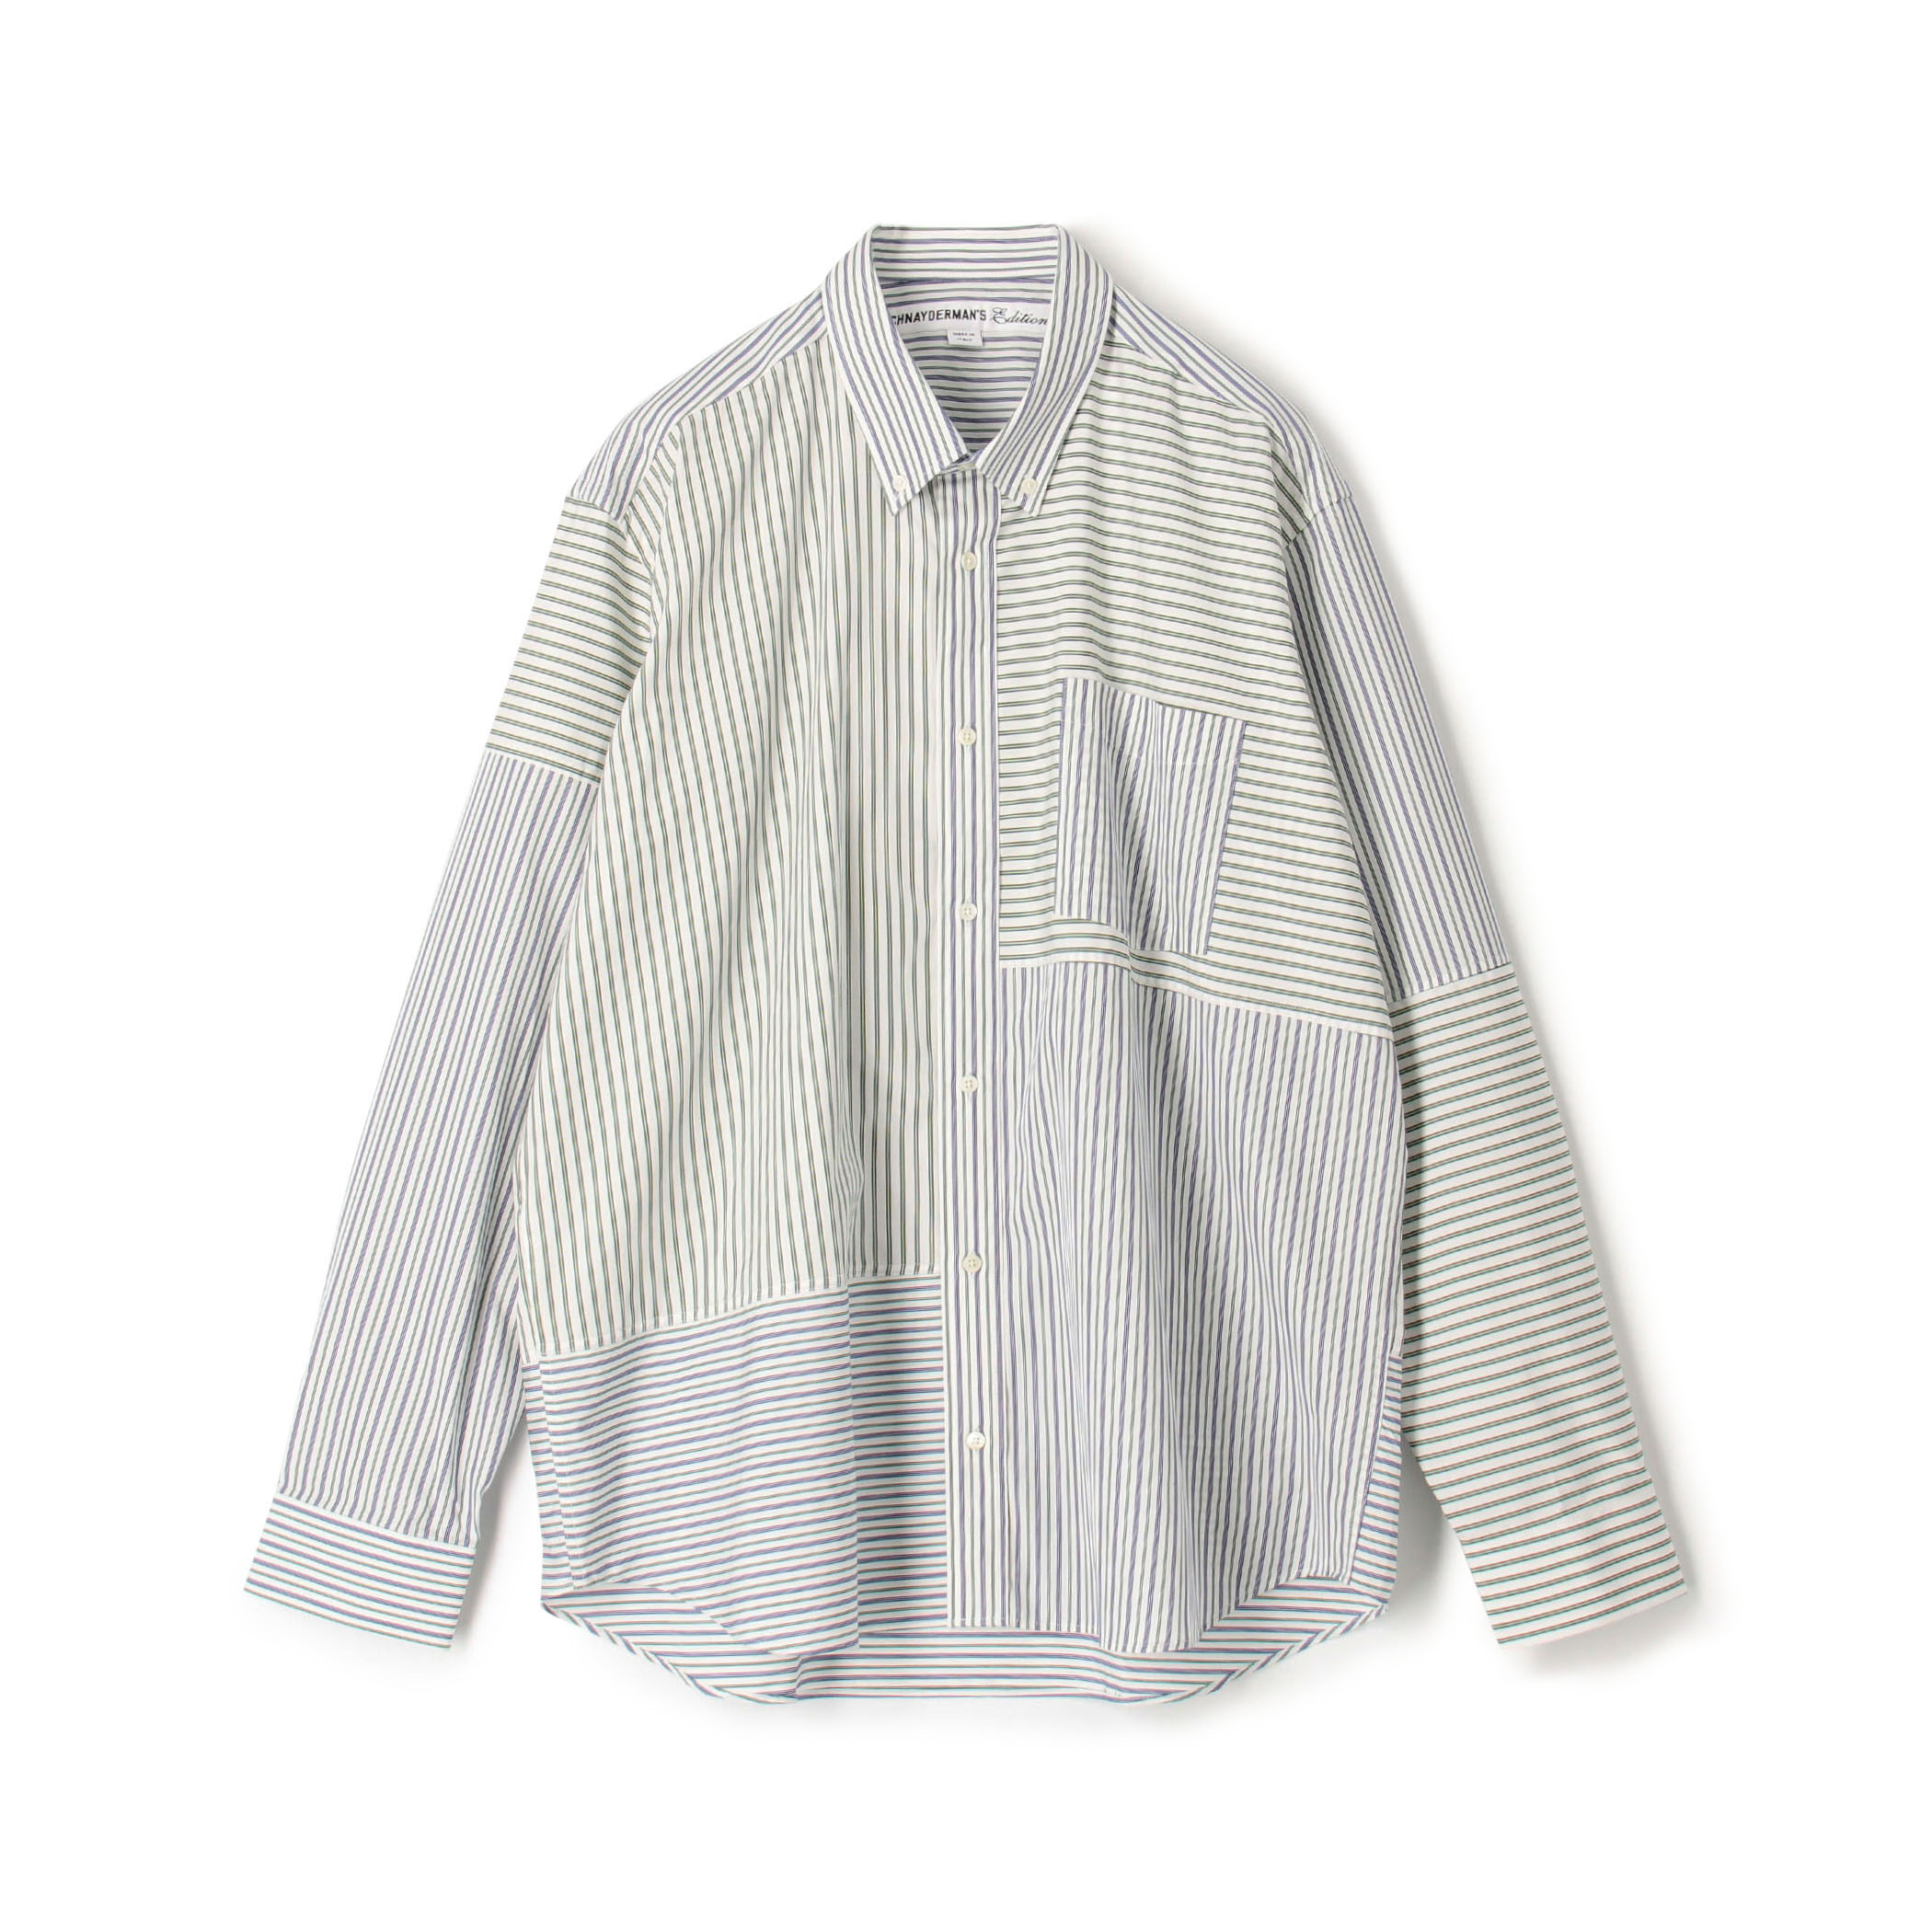 【別注】SCHNAYDERMAN'S×Edition Patchwork Striped Shirt